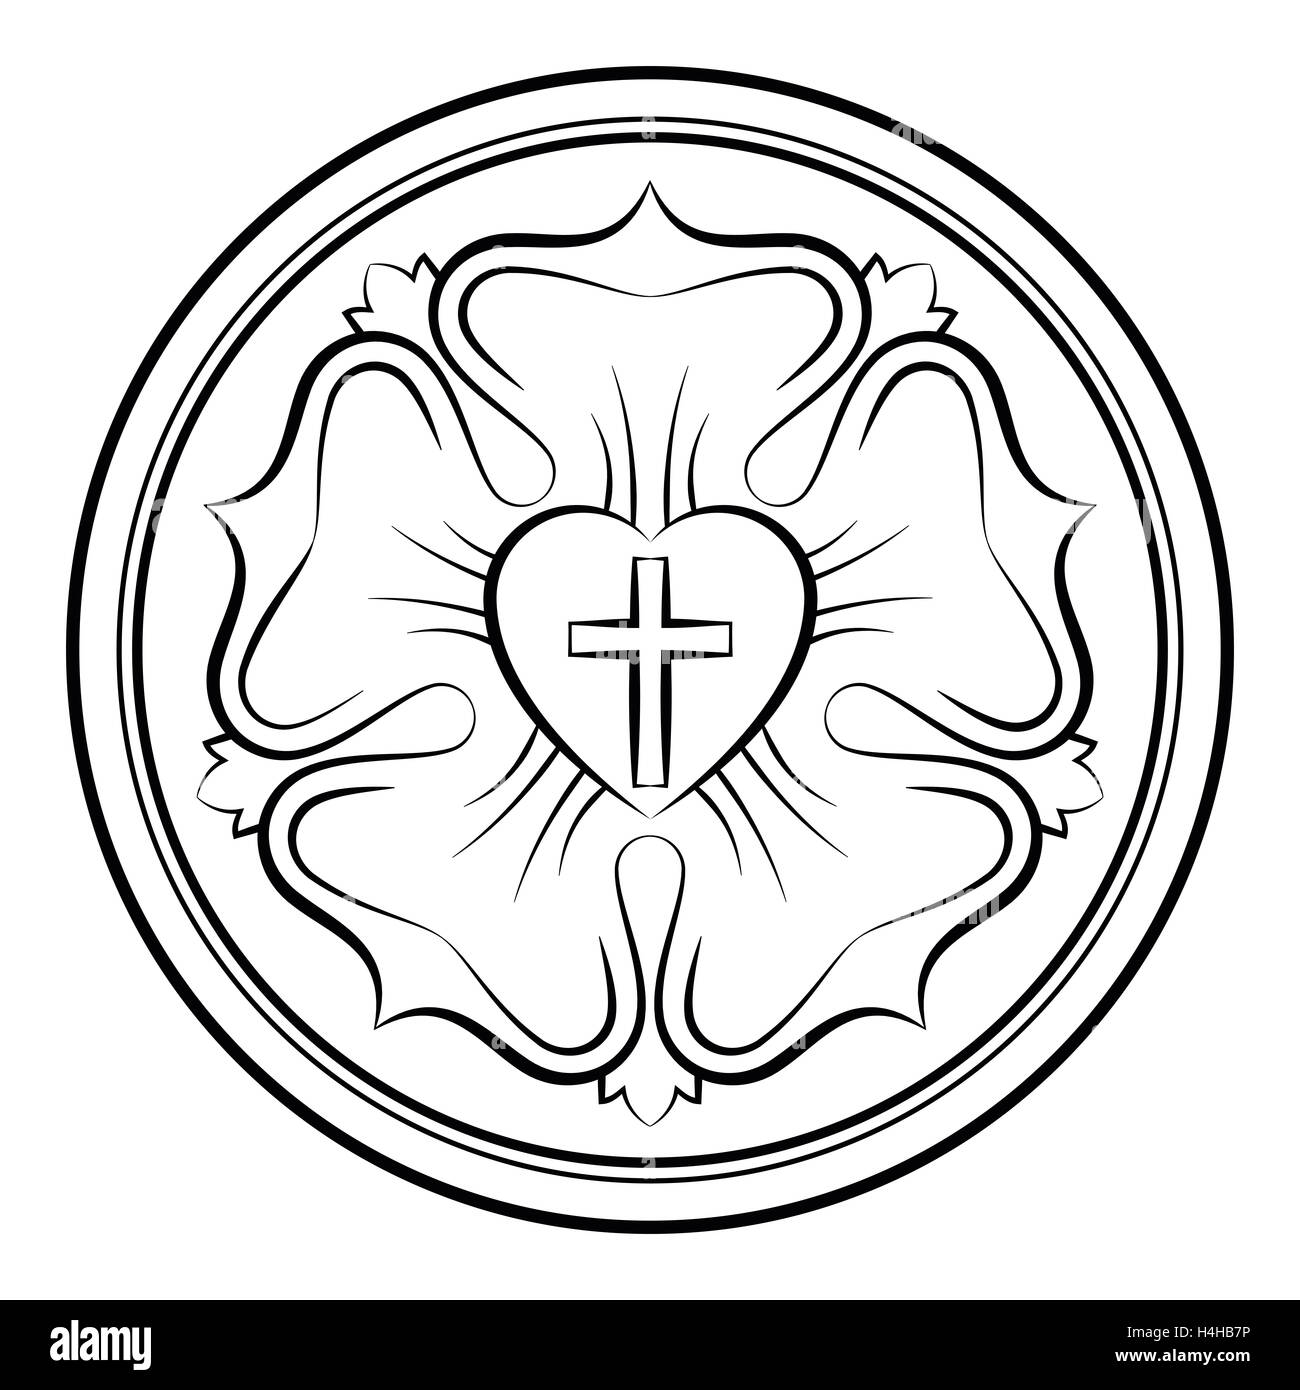 Lutero rose monocromo ilustración caligráfico. También el sello de Lutero, símbolo del luteranismo. Foto de stock